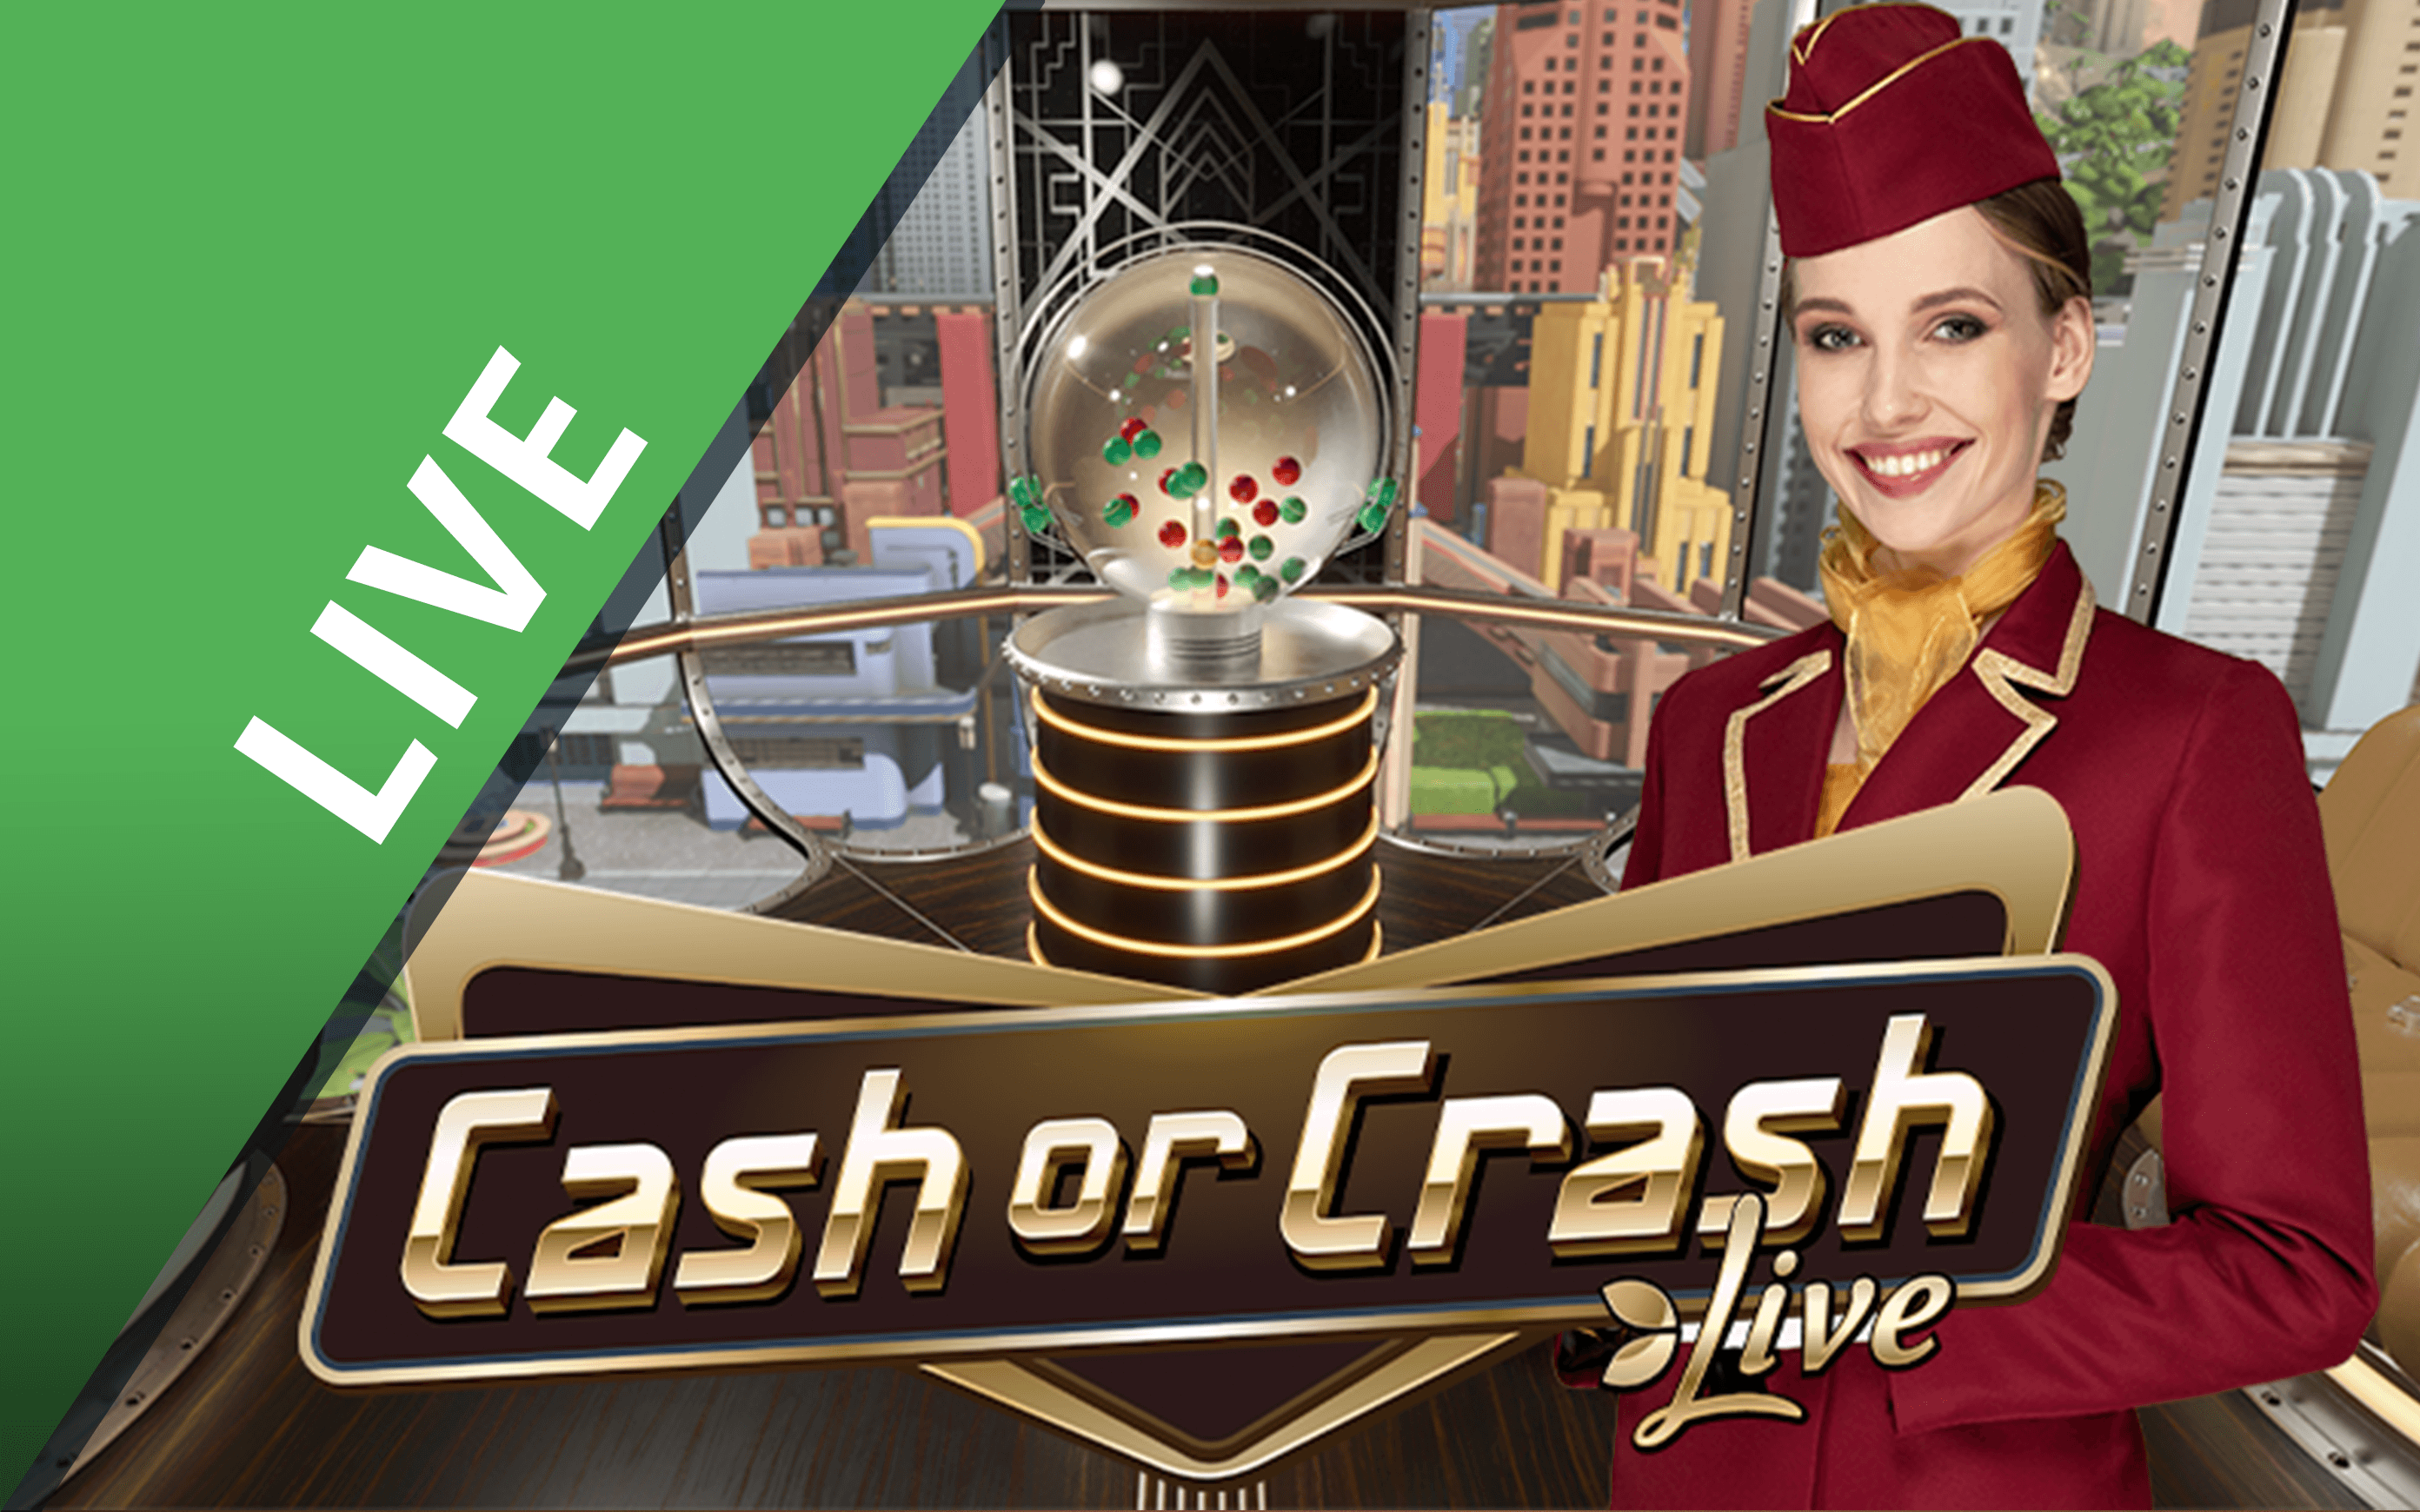 Luaj Cash or Crash në kazino Starcasino.be në internet